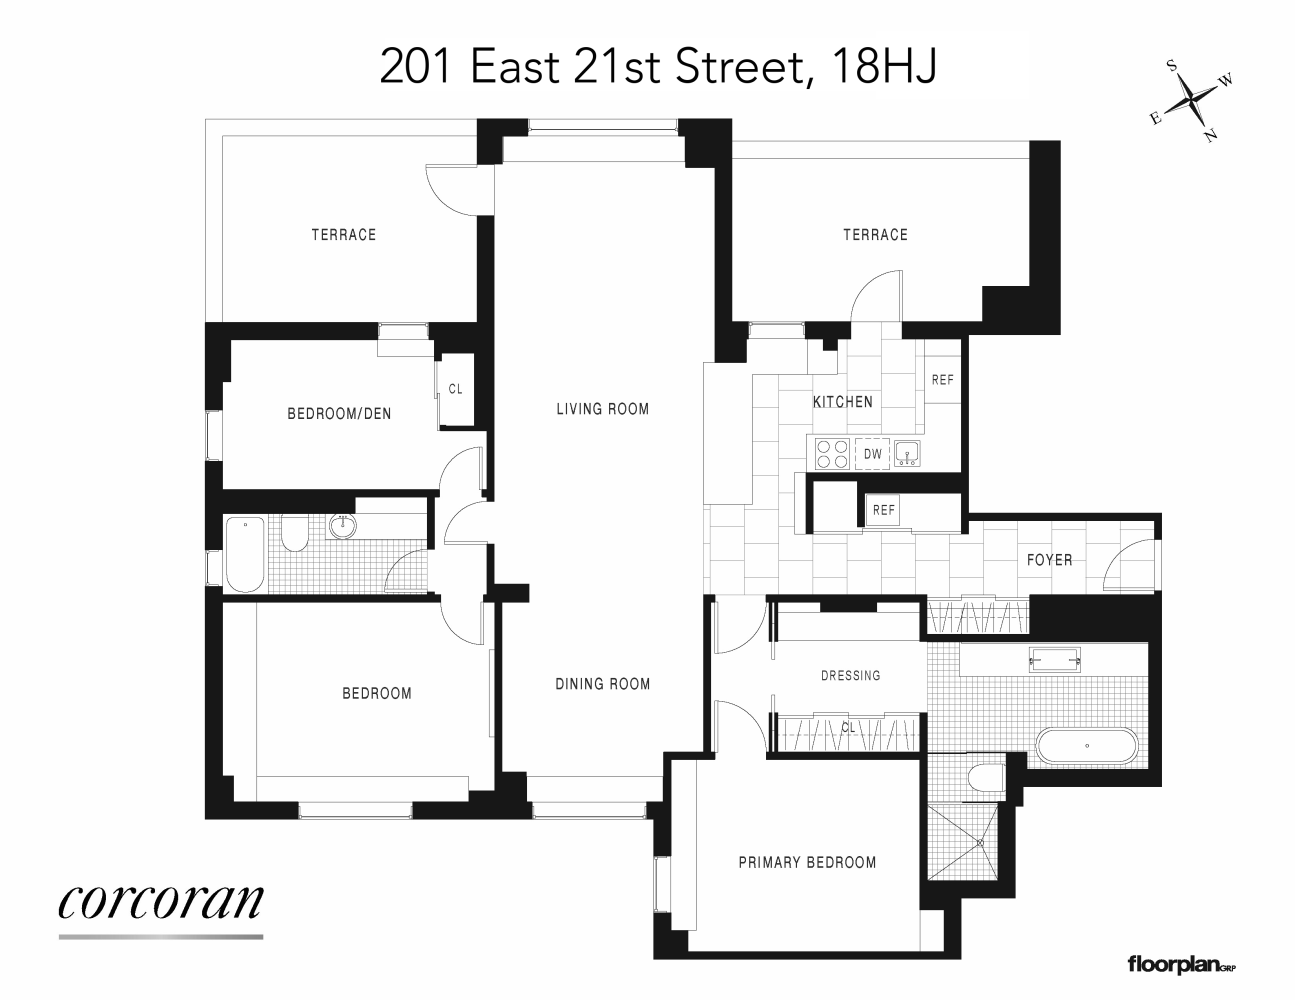 Floorplan for 201 East 21st Street, 18HJ